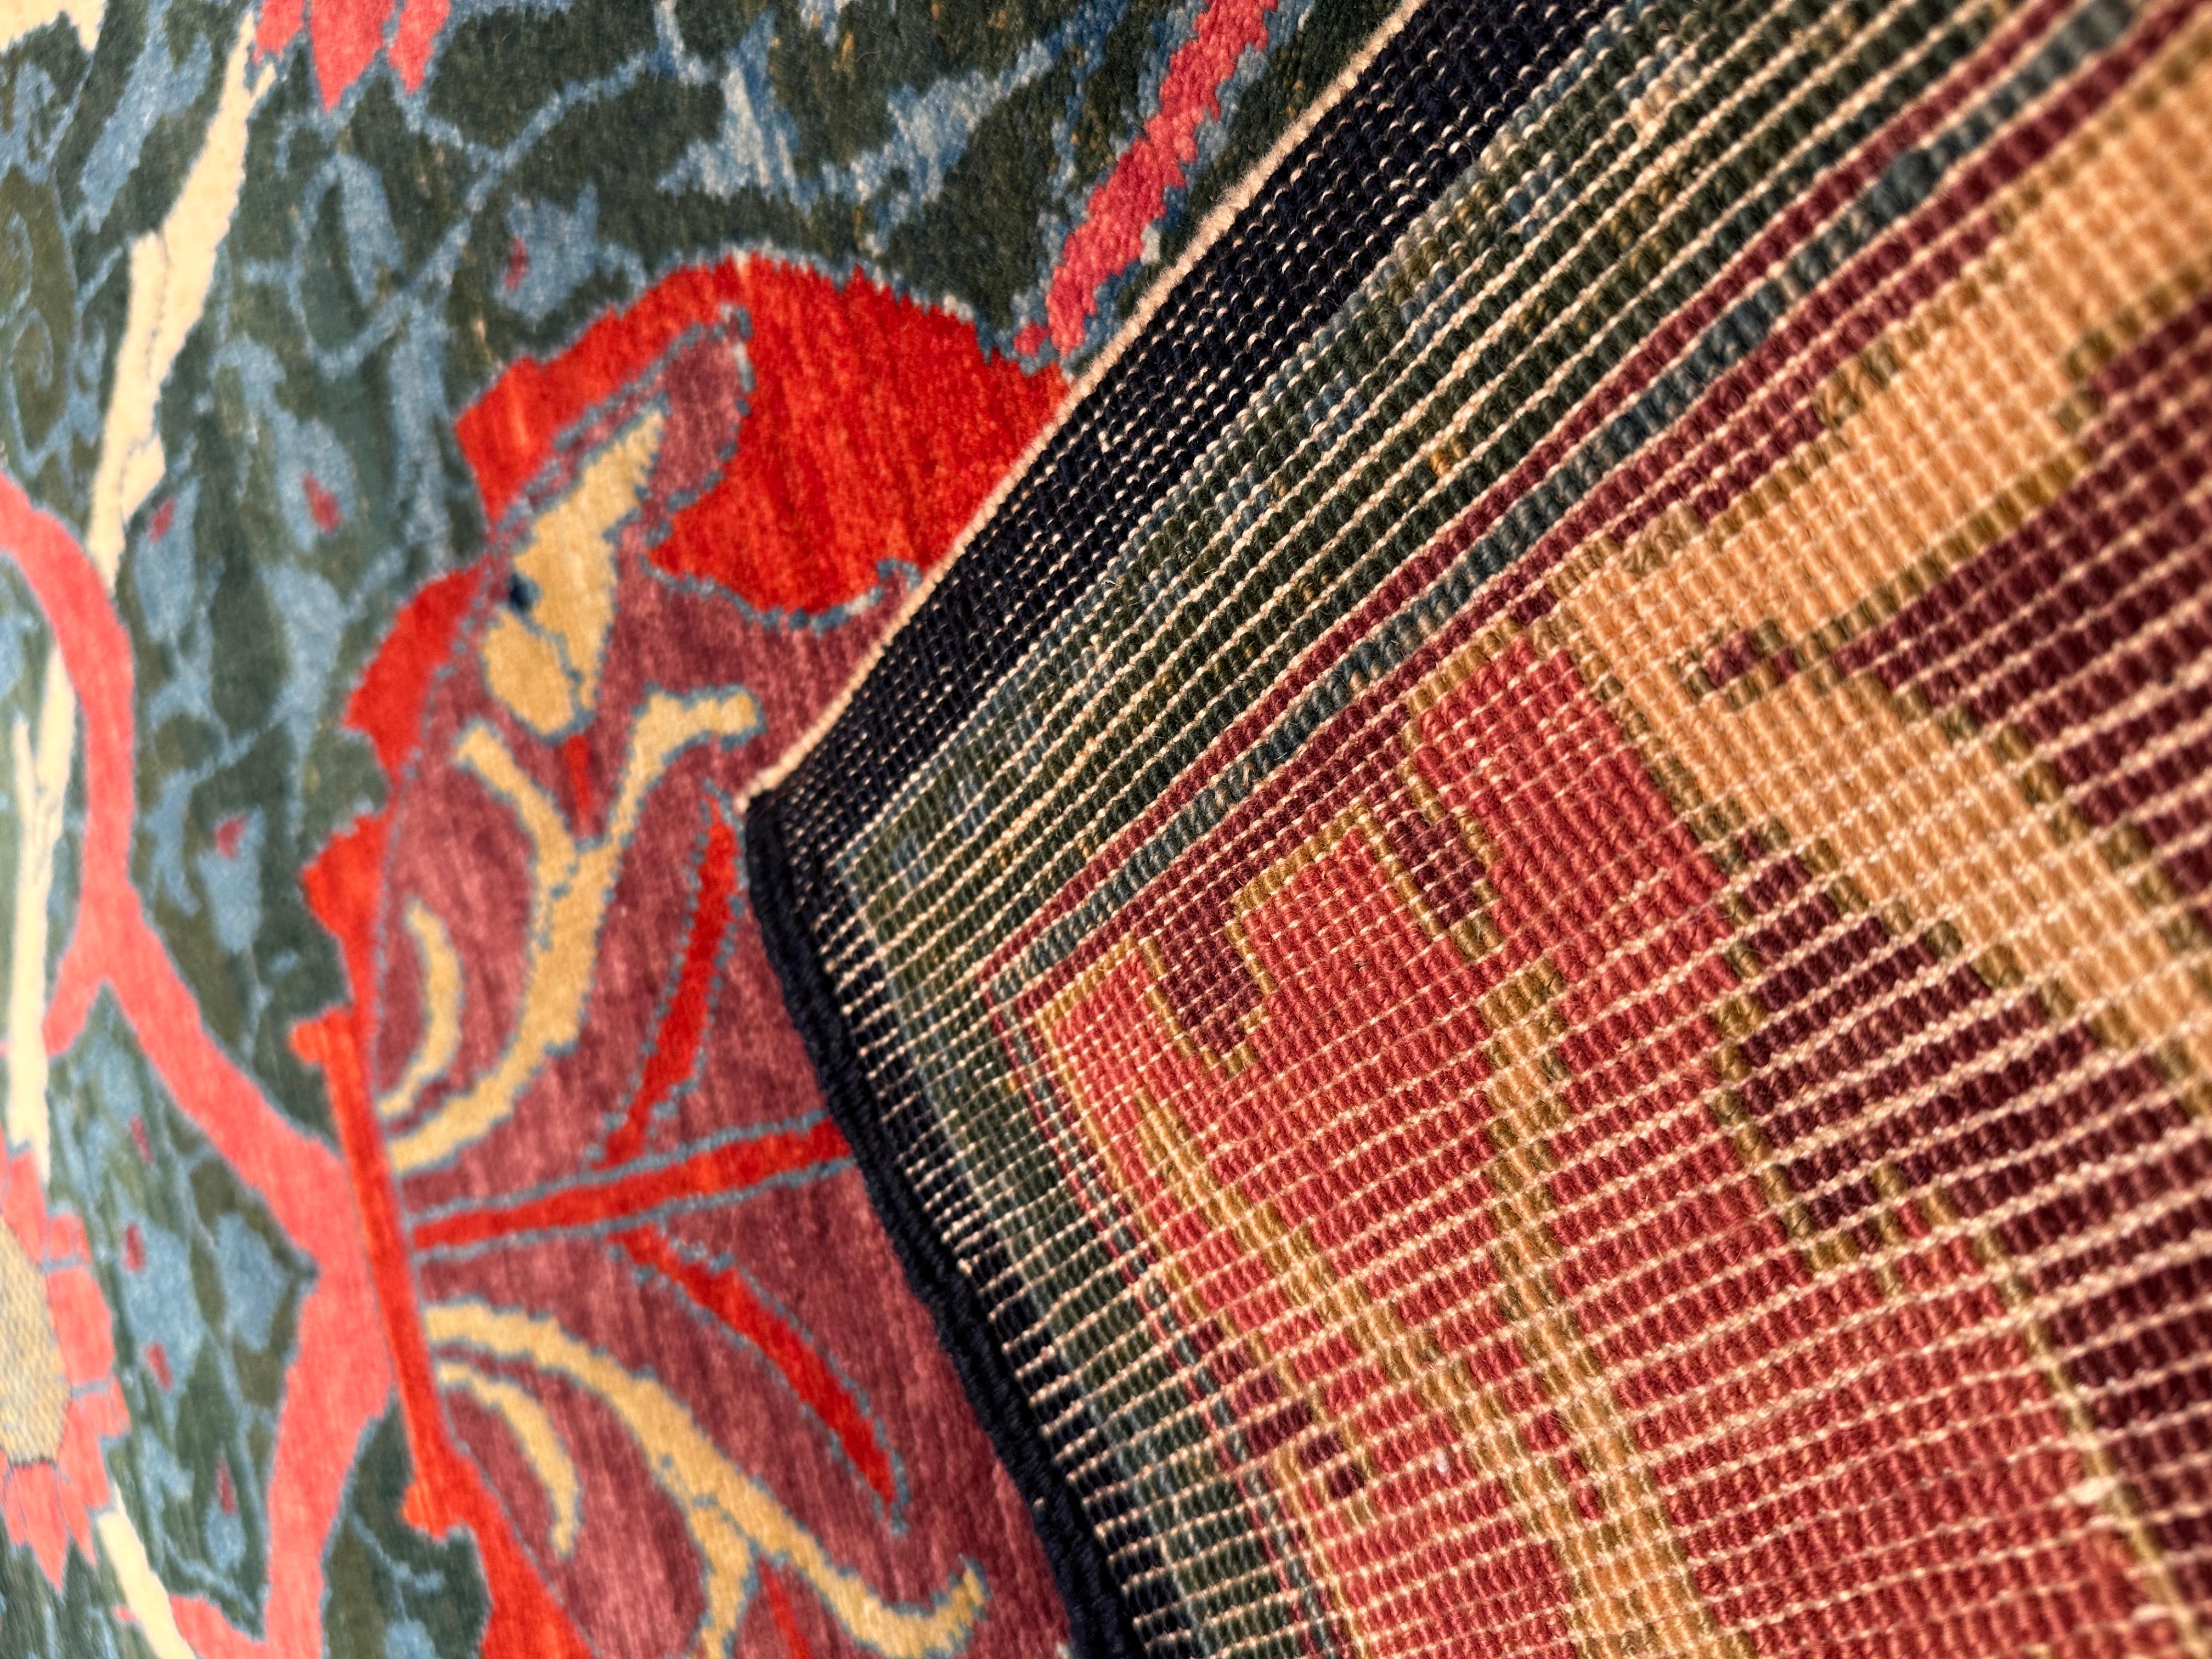 Die Quelle des Teppichs stammt aus dem Buch Arts & Crafts Carpets, von Malcolm Haslam und David Black, 1991, Abb. 49. Dieser Teppich aus Hammersmith wurde 1882 von William Morris im Vereinigten Königreich entworfen. Im Jahr 1887 wurde der englische